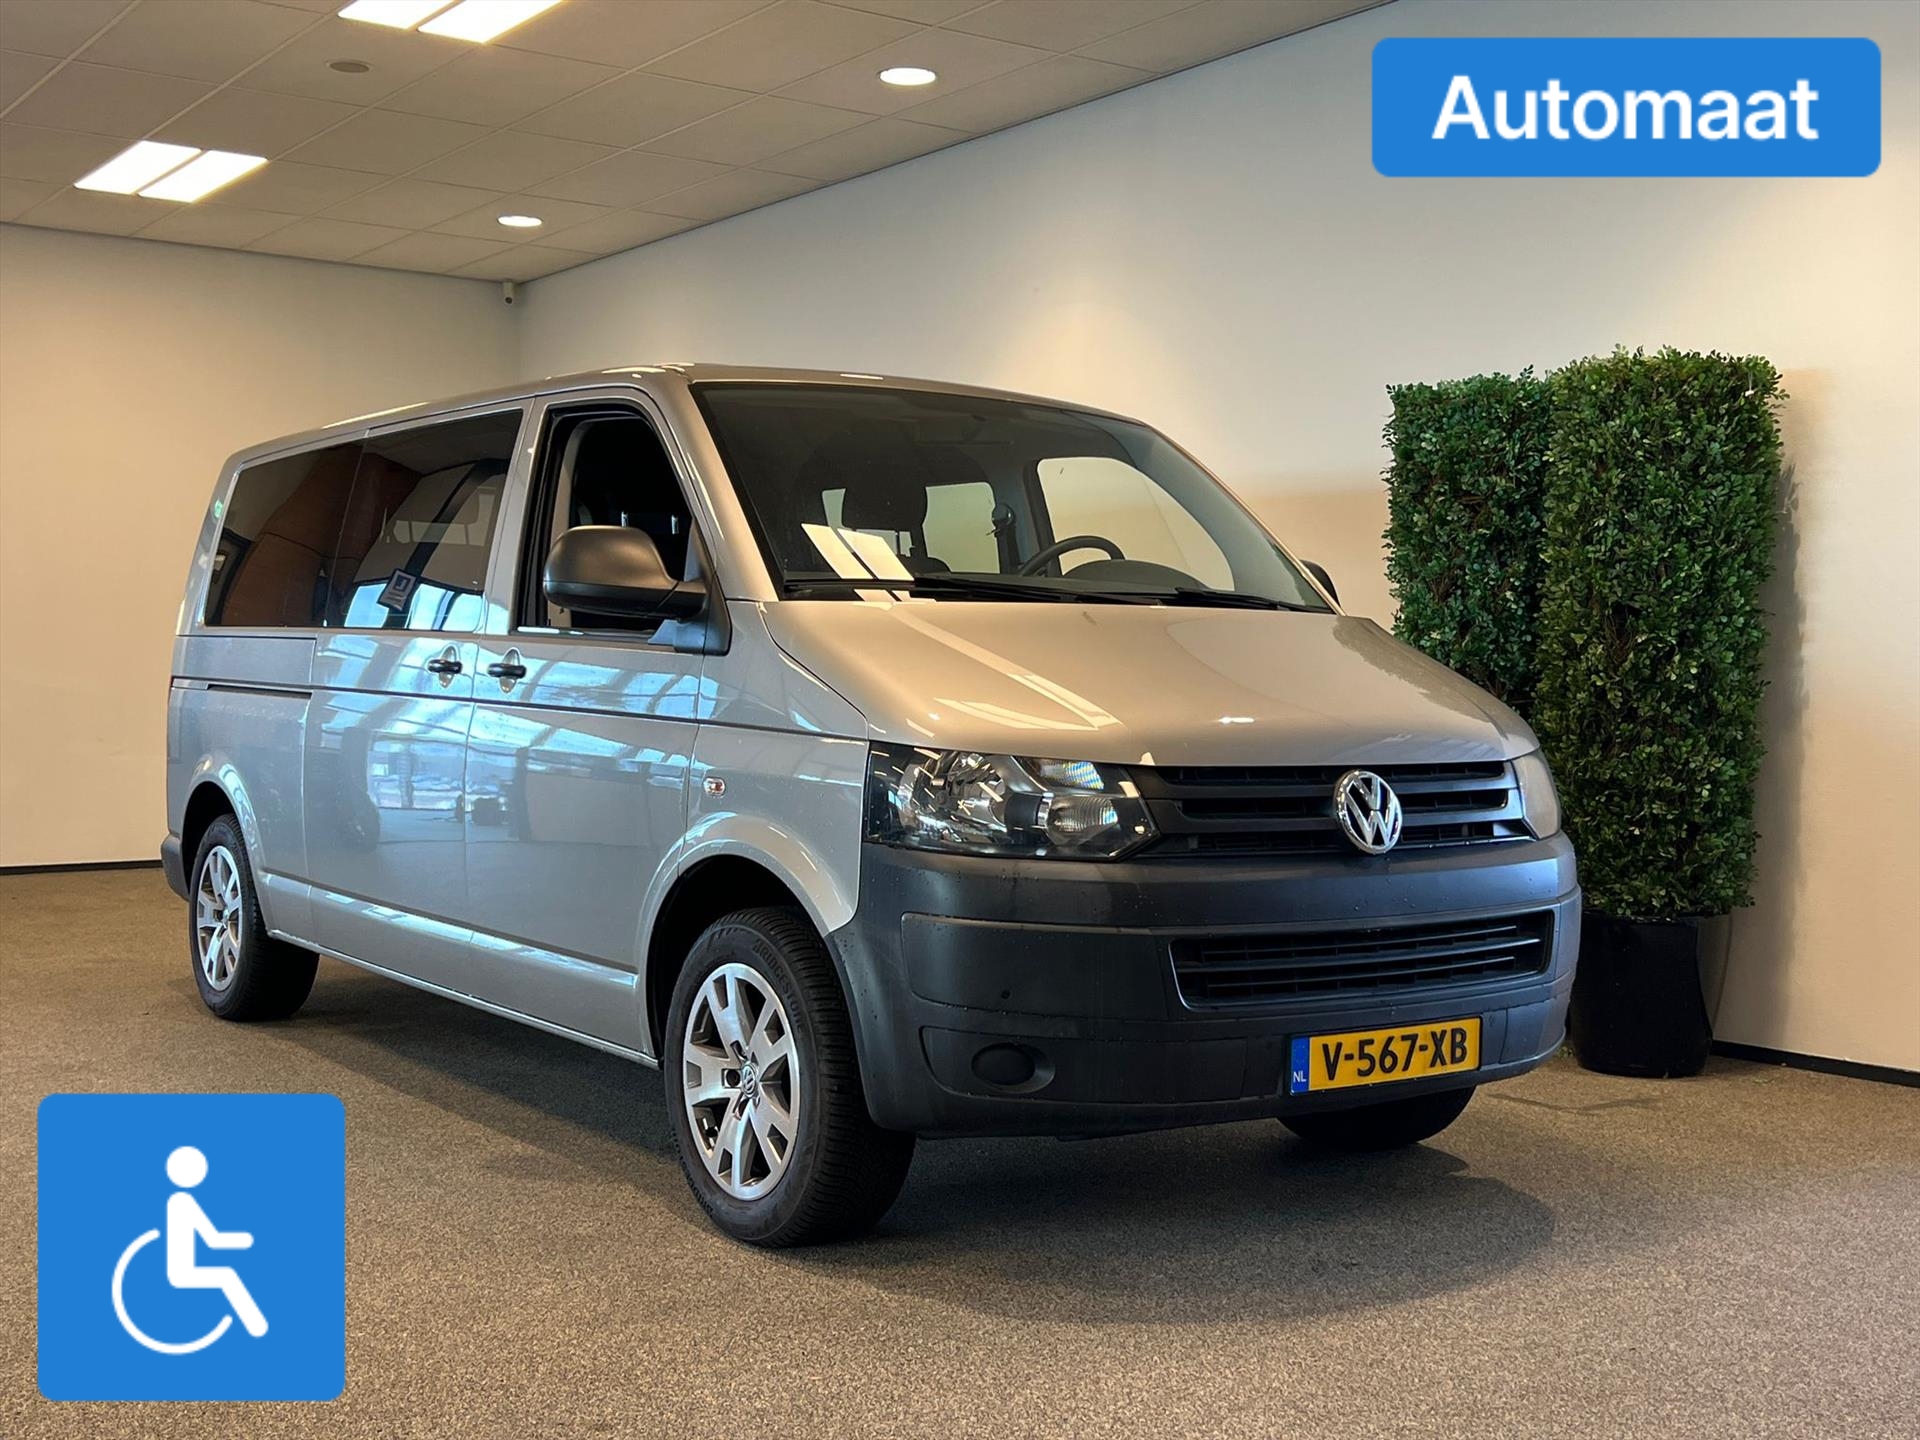 Volkswagen Transporter L2H1 Rolstoelbus Automaat (airco) bij viaBOVAG.nl